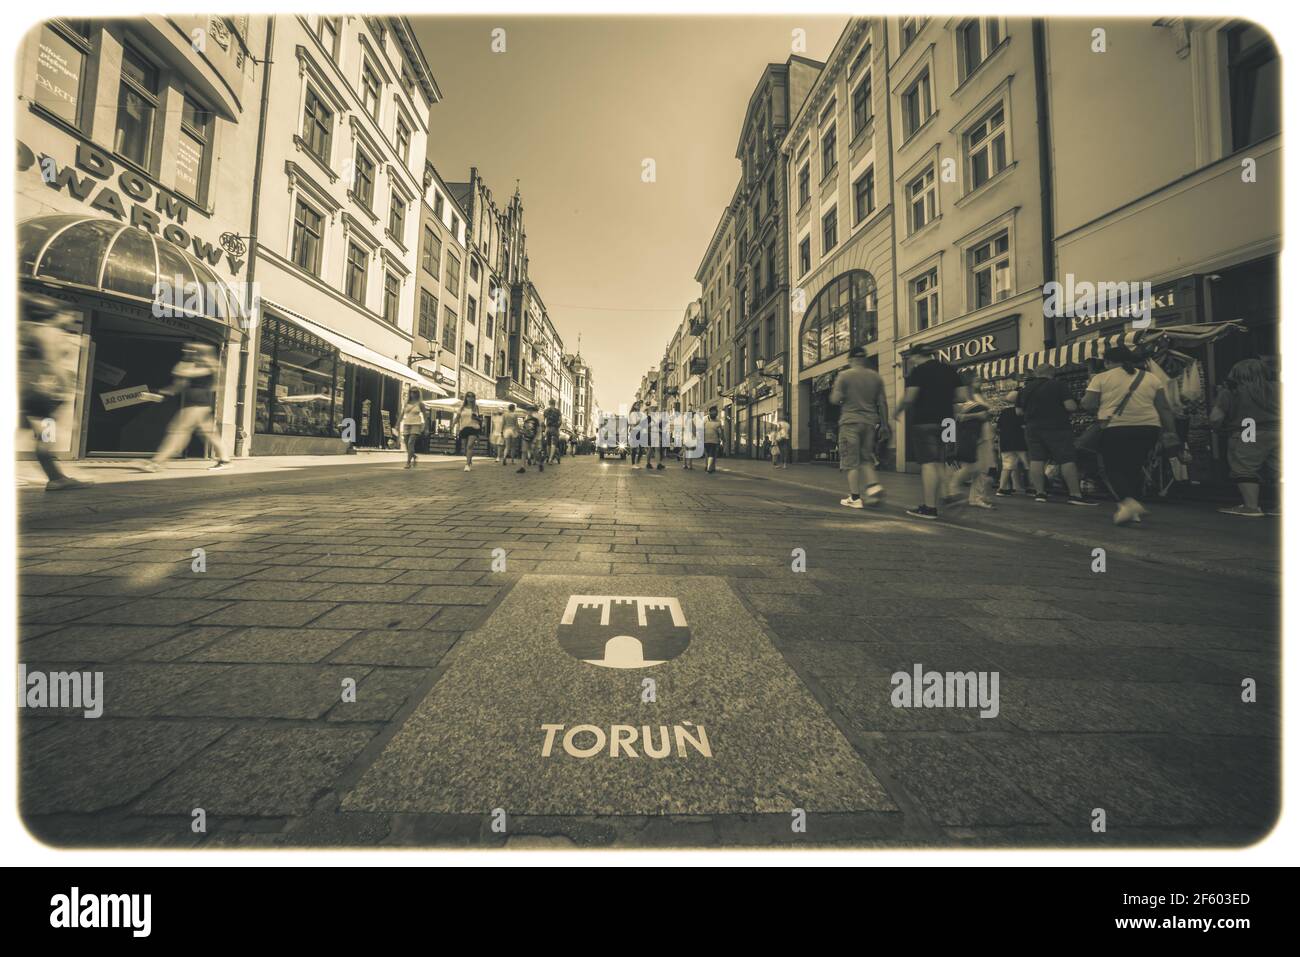 Torun, Polen - August 2020 : Torun Stadtwappen auf dem Straßenpflaster in der historischen Altstadt Stockfoto